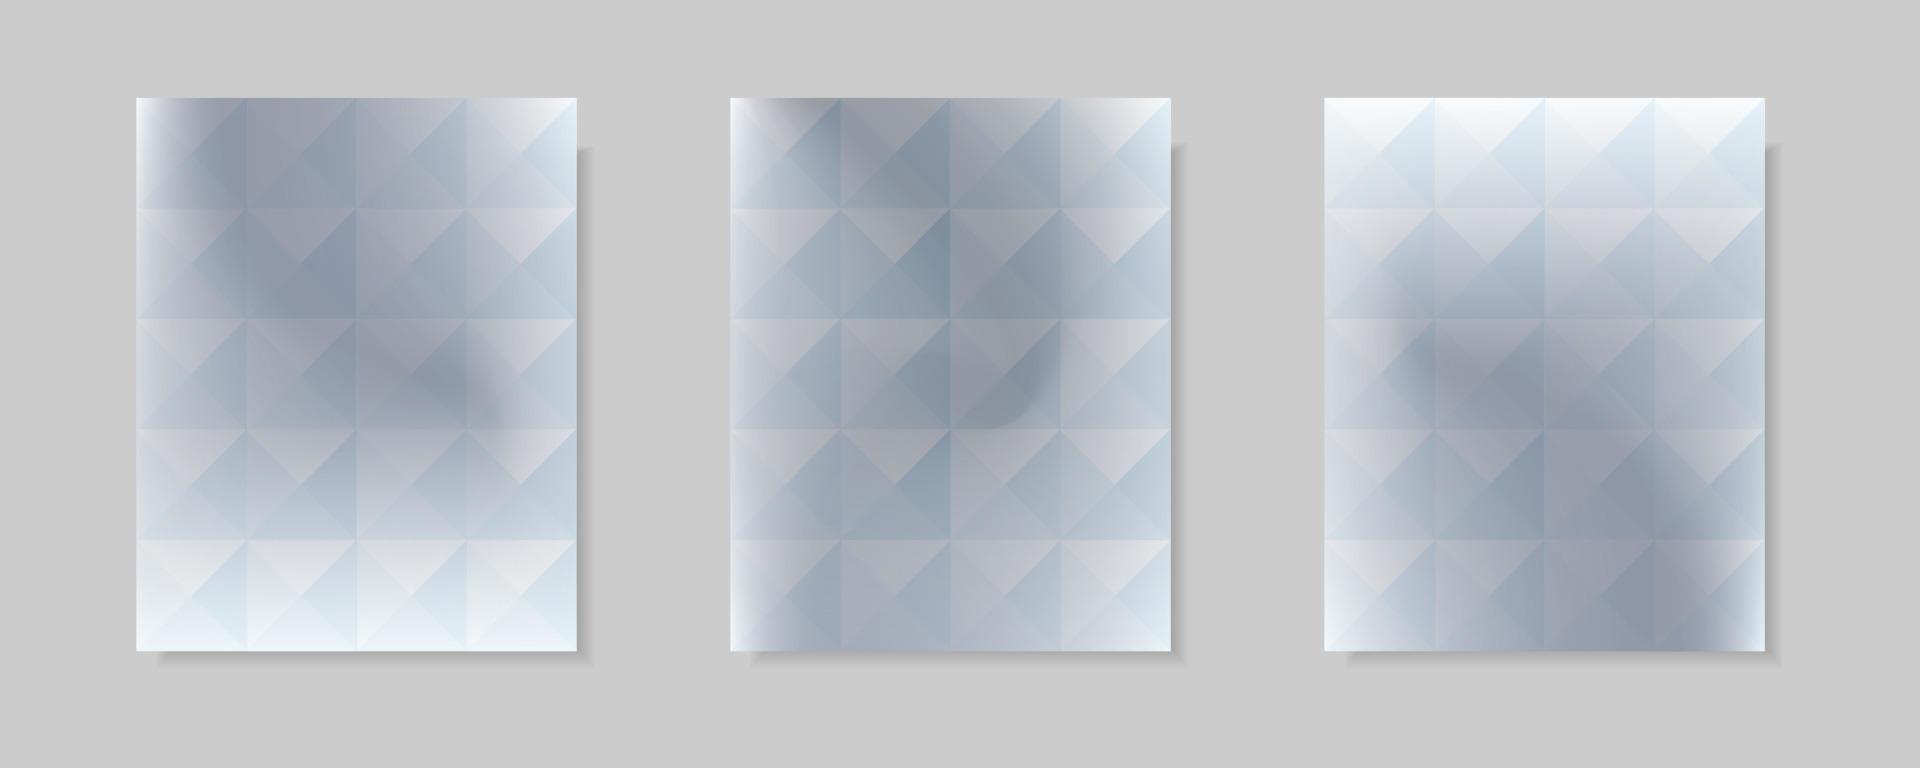 conjunto de fondos abstractos de portada de vector degradado gris y blanco. diseño de patrón triangular con estilo de forma de cristal para fondo de folleto comercial, tarjeta, papel tapiz, afiche y diseño gráfico.